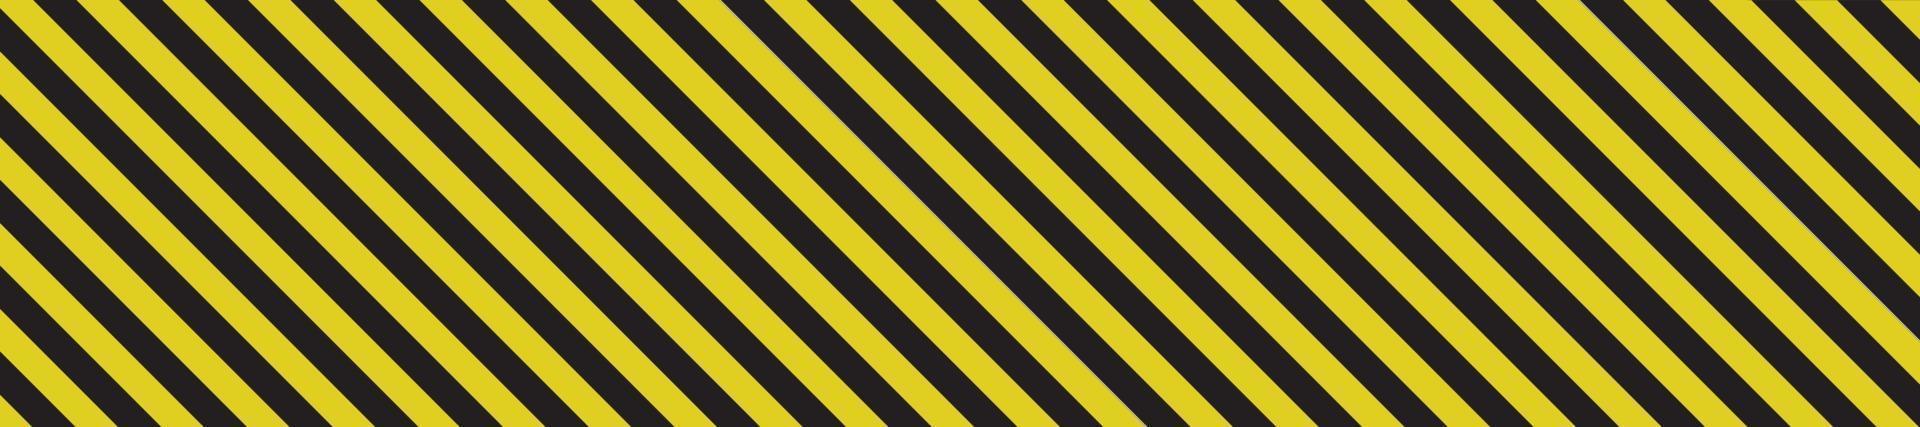 Traditional warning stripe. Vector illustration